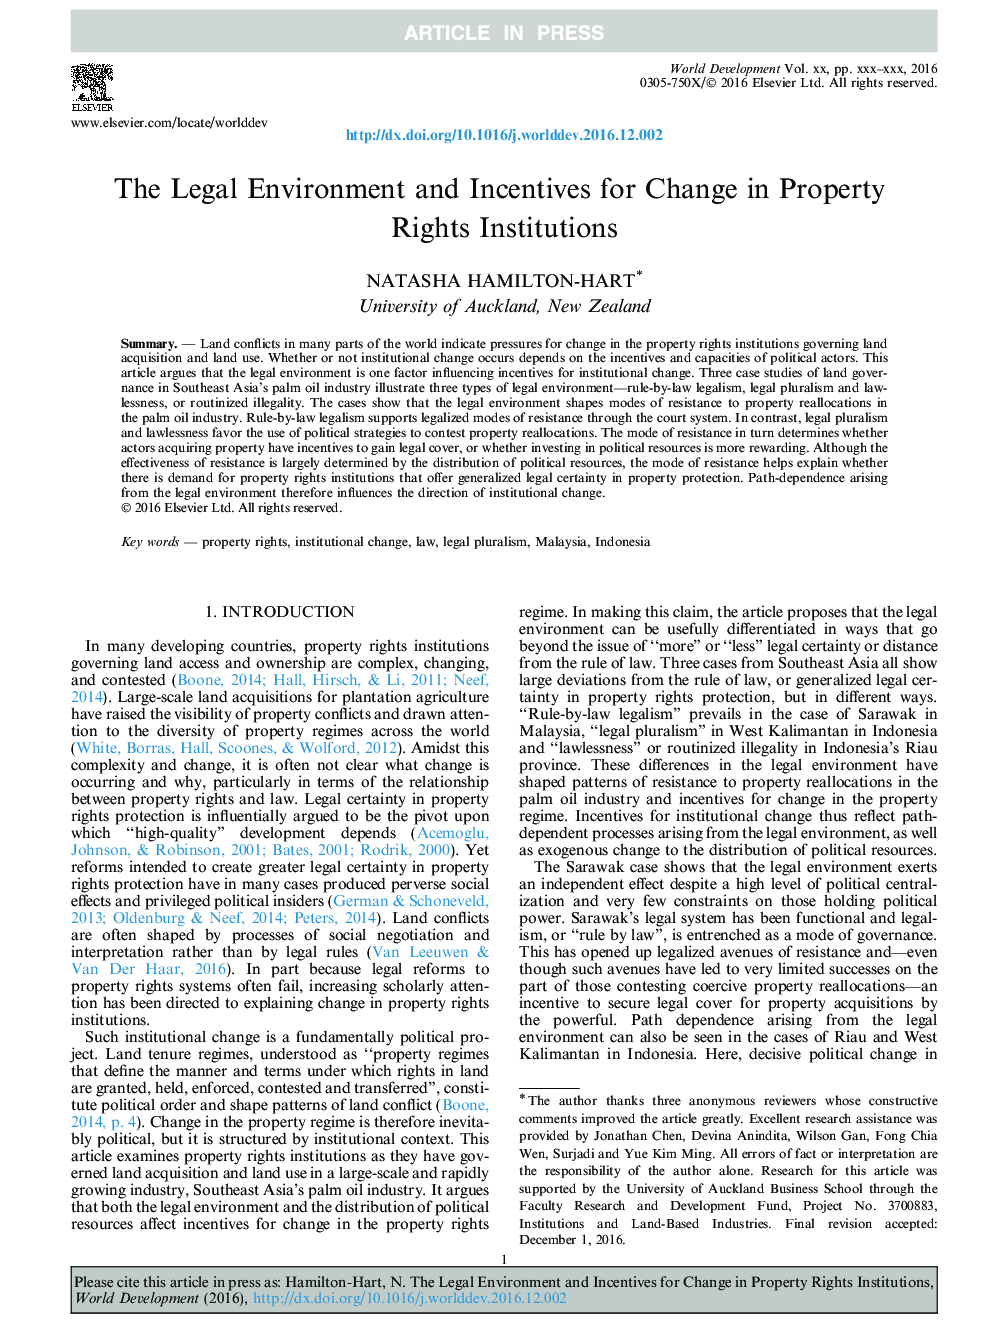 محیط حقوقی و انگیزه های تغییر در موسسات حقوق مالکیت 